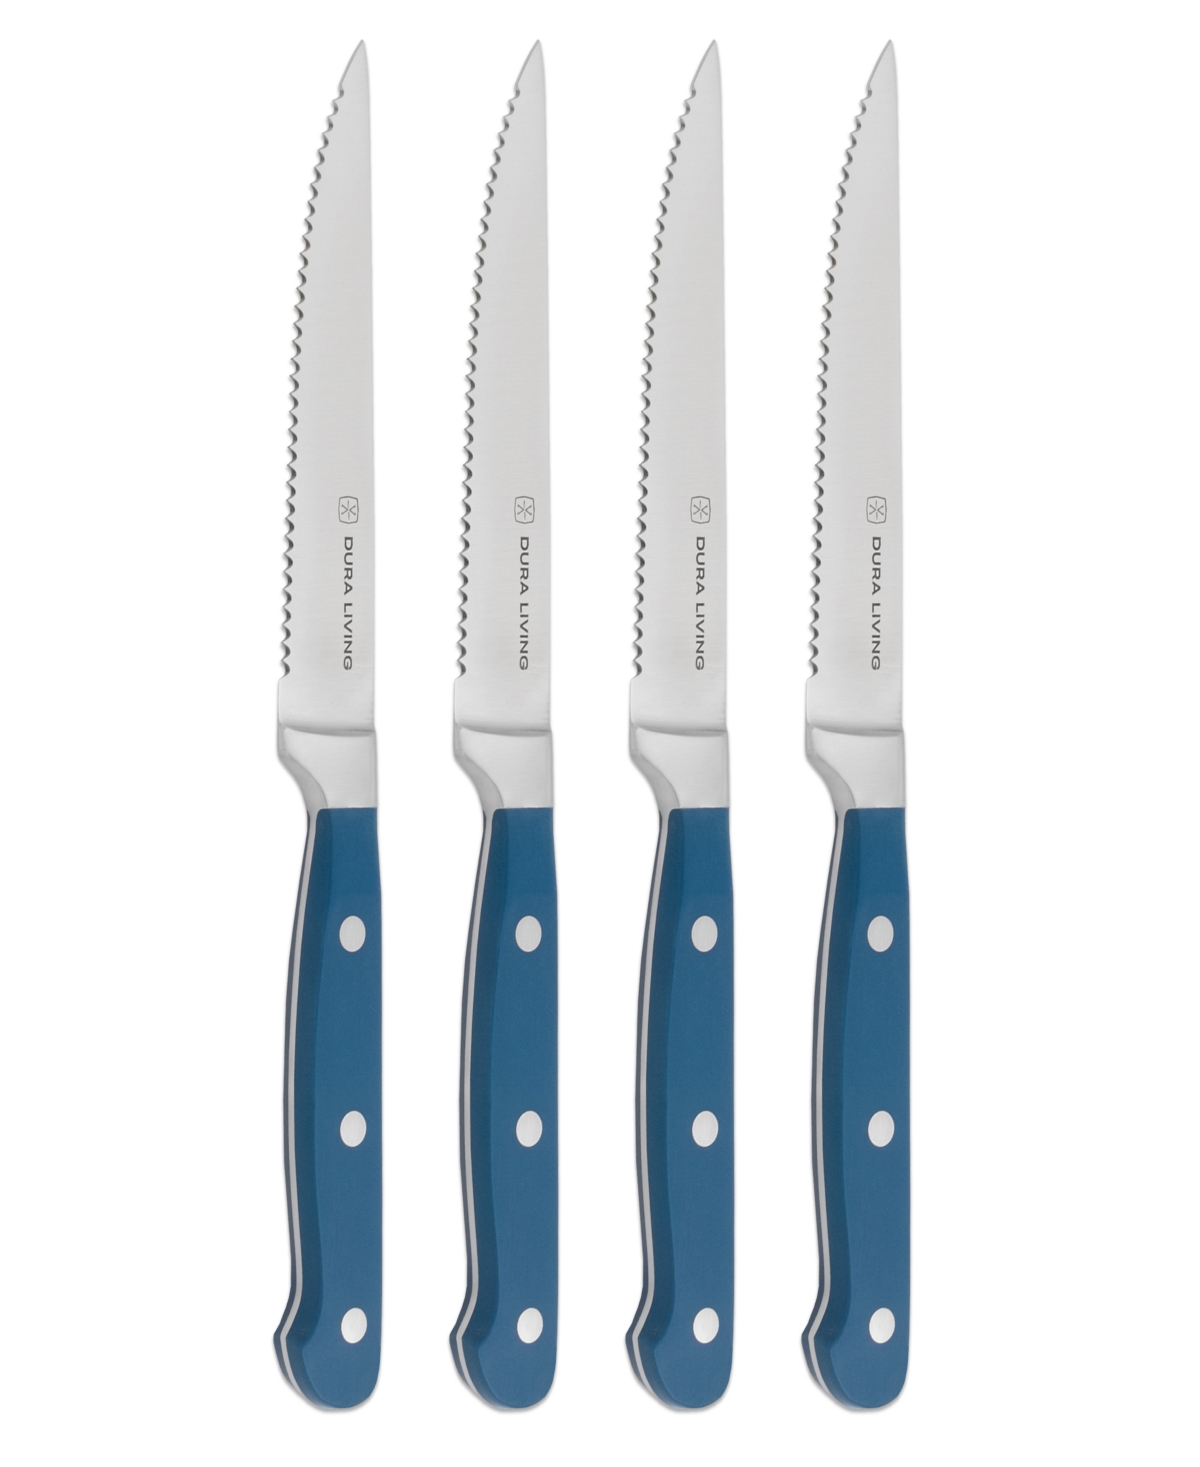 Duraliving 4-piece Steak Knife Set In Royal Blue